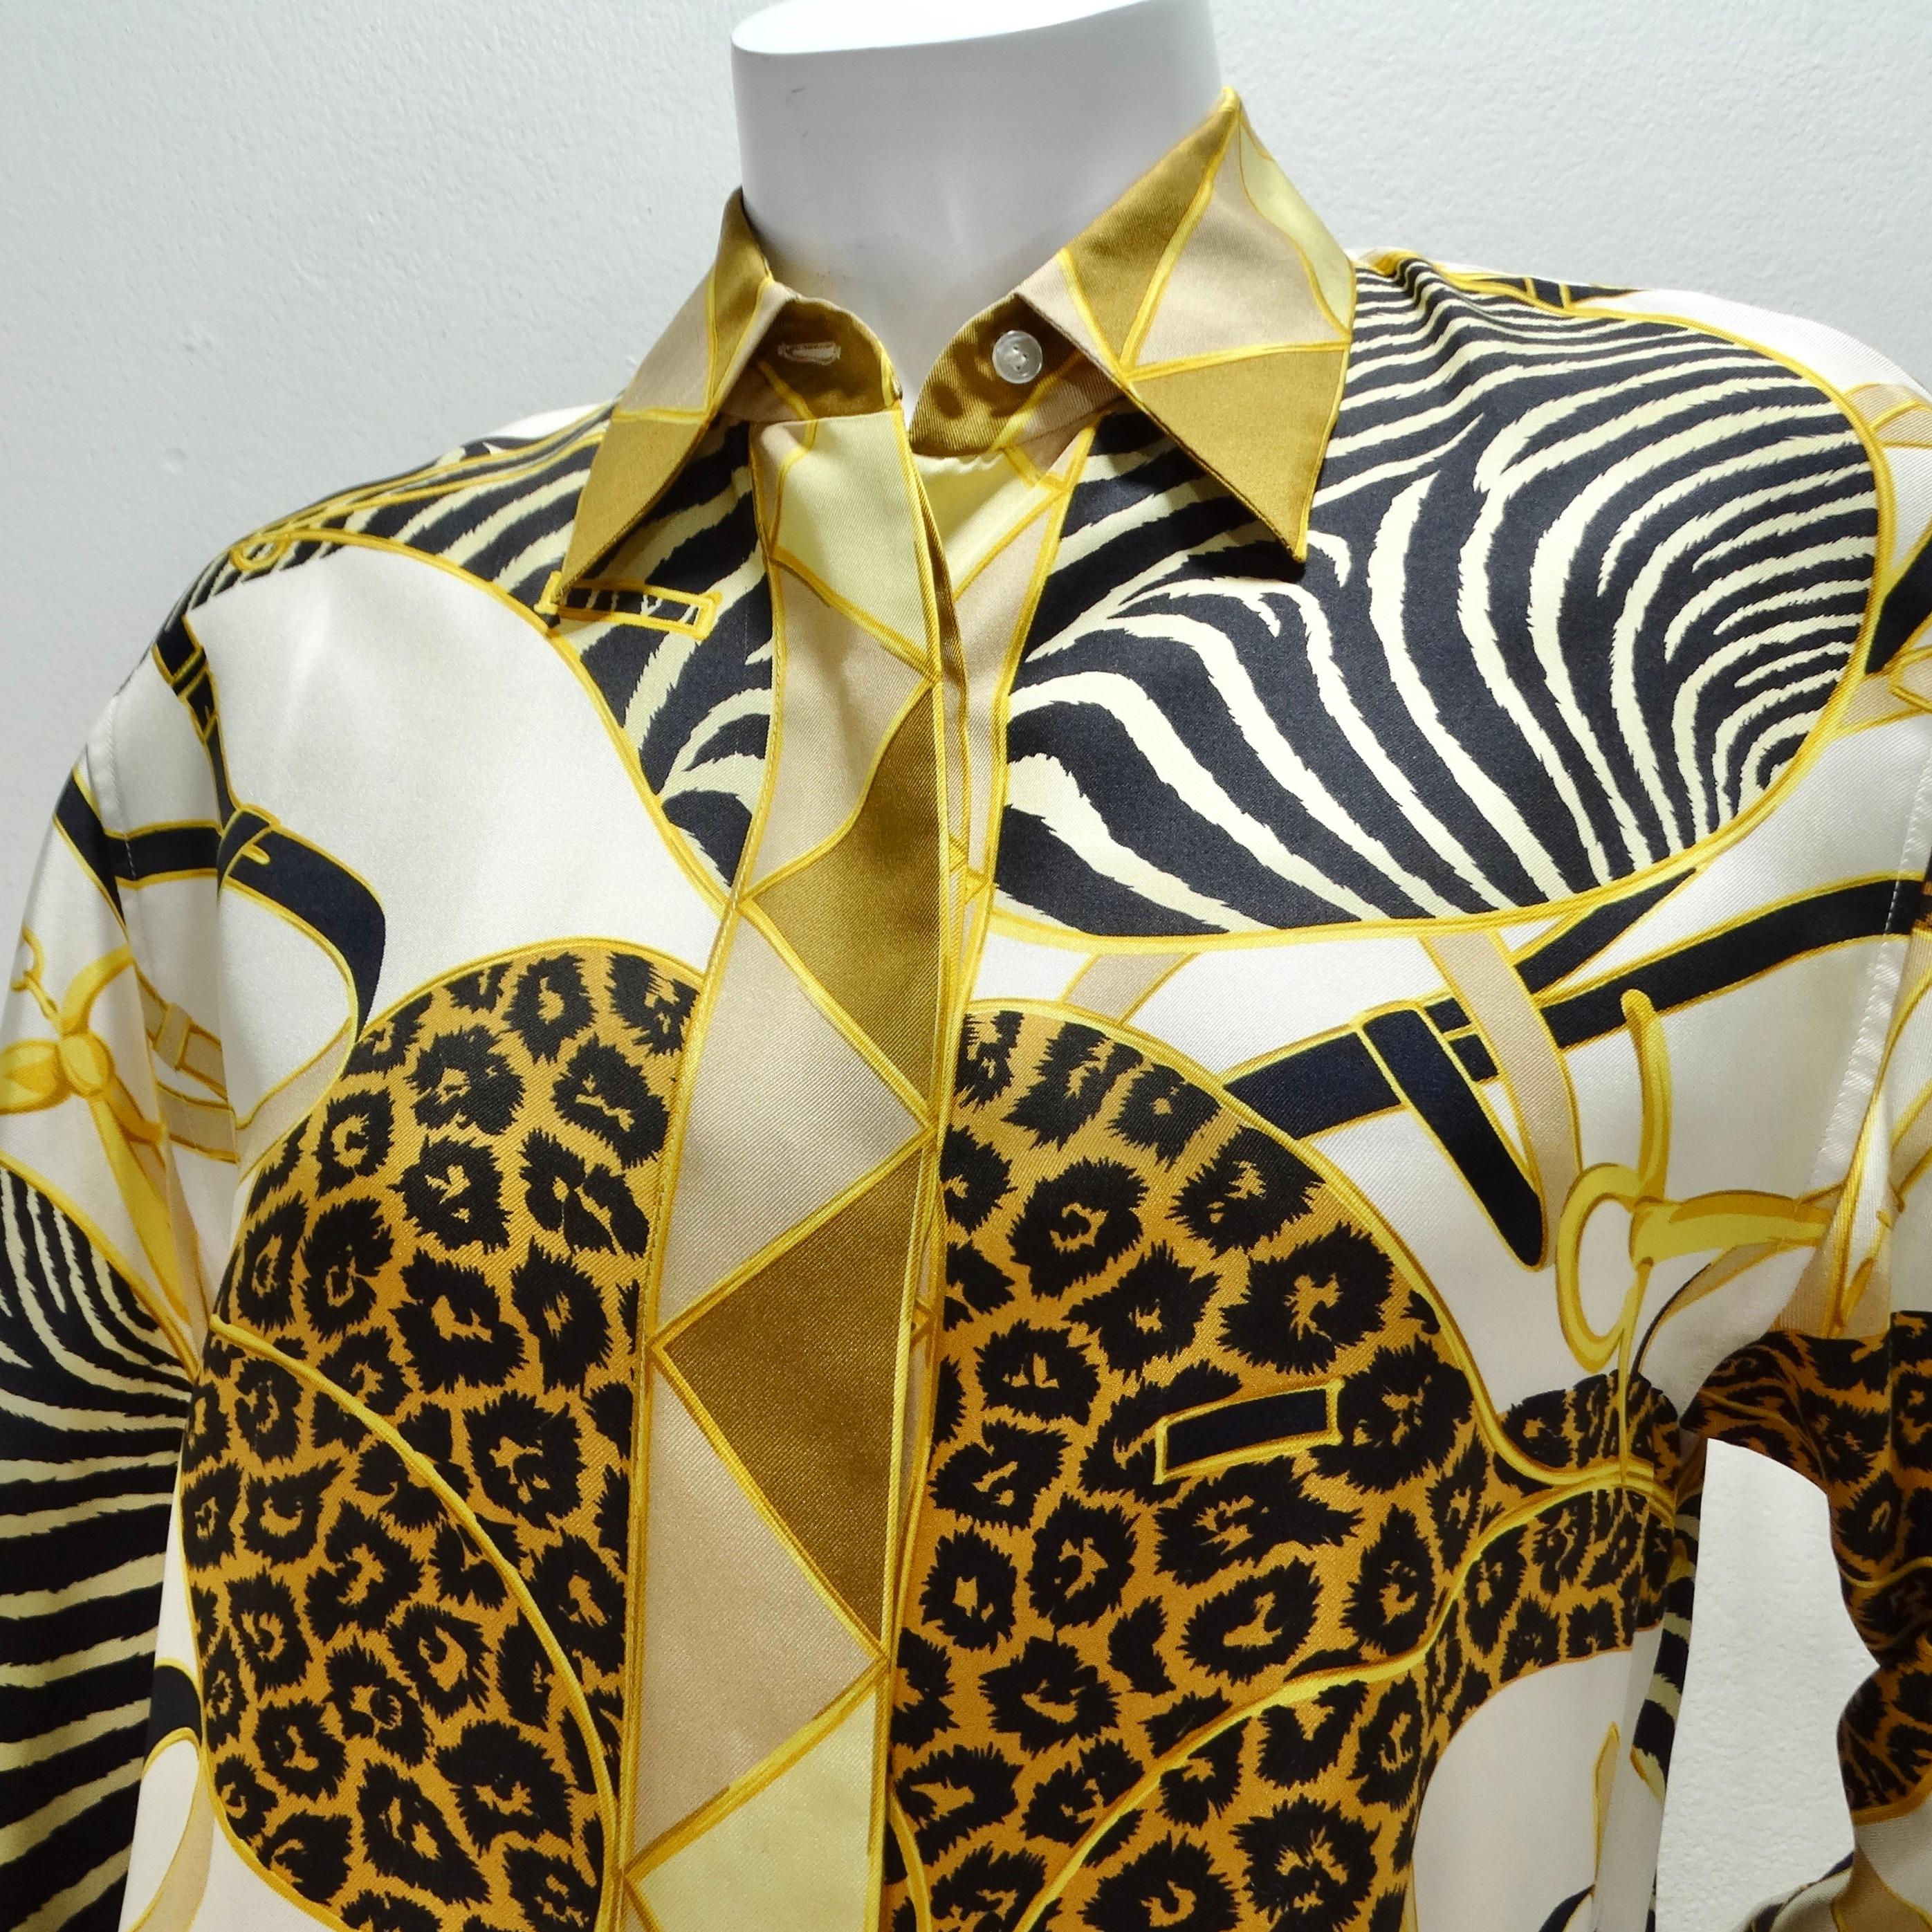 Erhöhen Sie Ihre Garderobe mit der zeitlosen Raffinesse dieses Gucci 1990s Silk Printed Button-Up Shirts. Dieses klassische Hemd mit Kragen ist aus luxuriöser 100%iger Seide gefertigt und strahlt Luxus und Raffinesse aus.

Das Hemd besticht durch